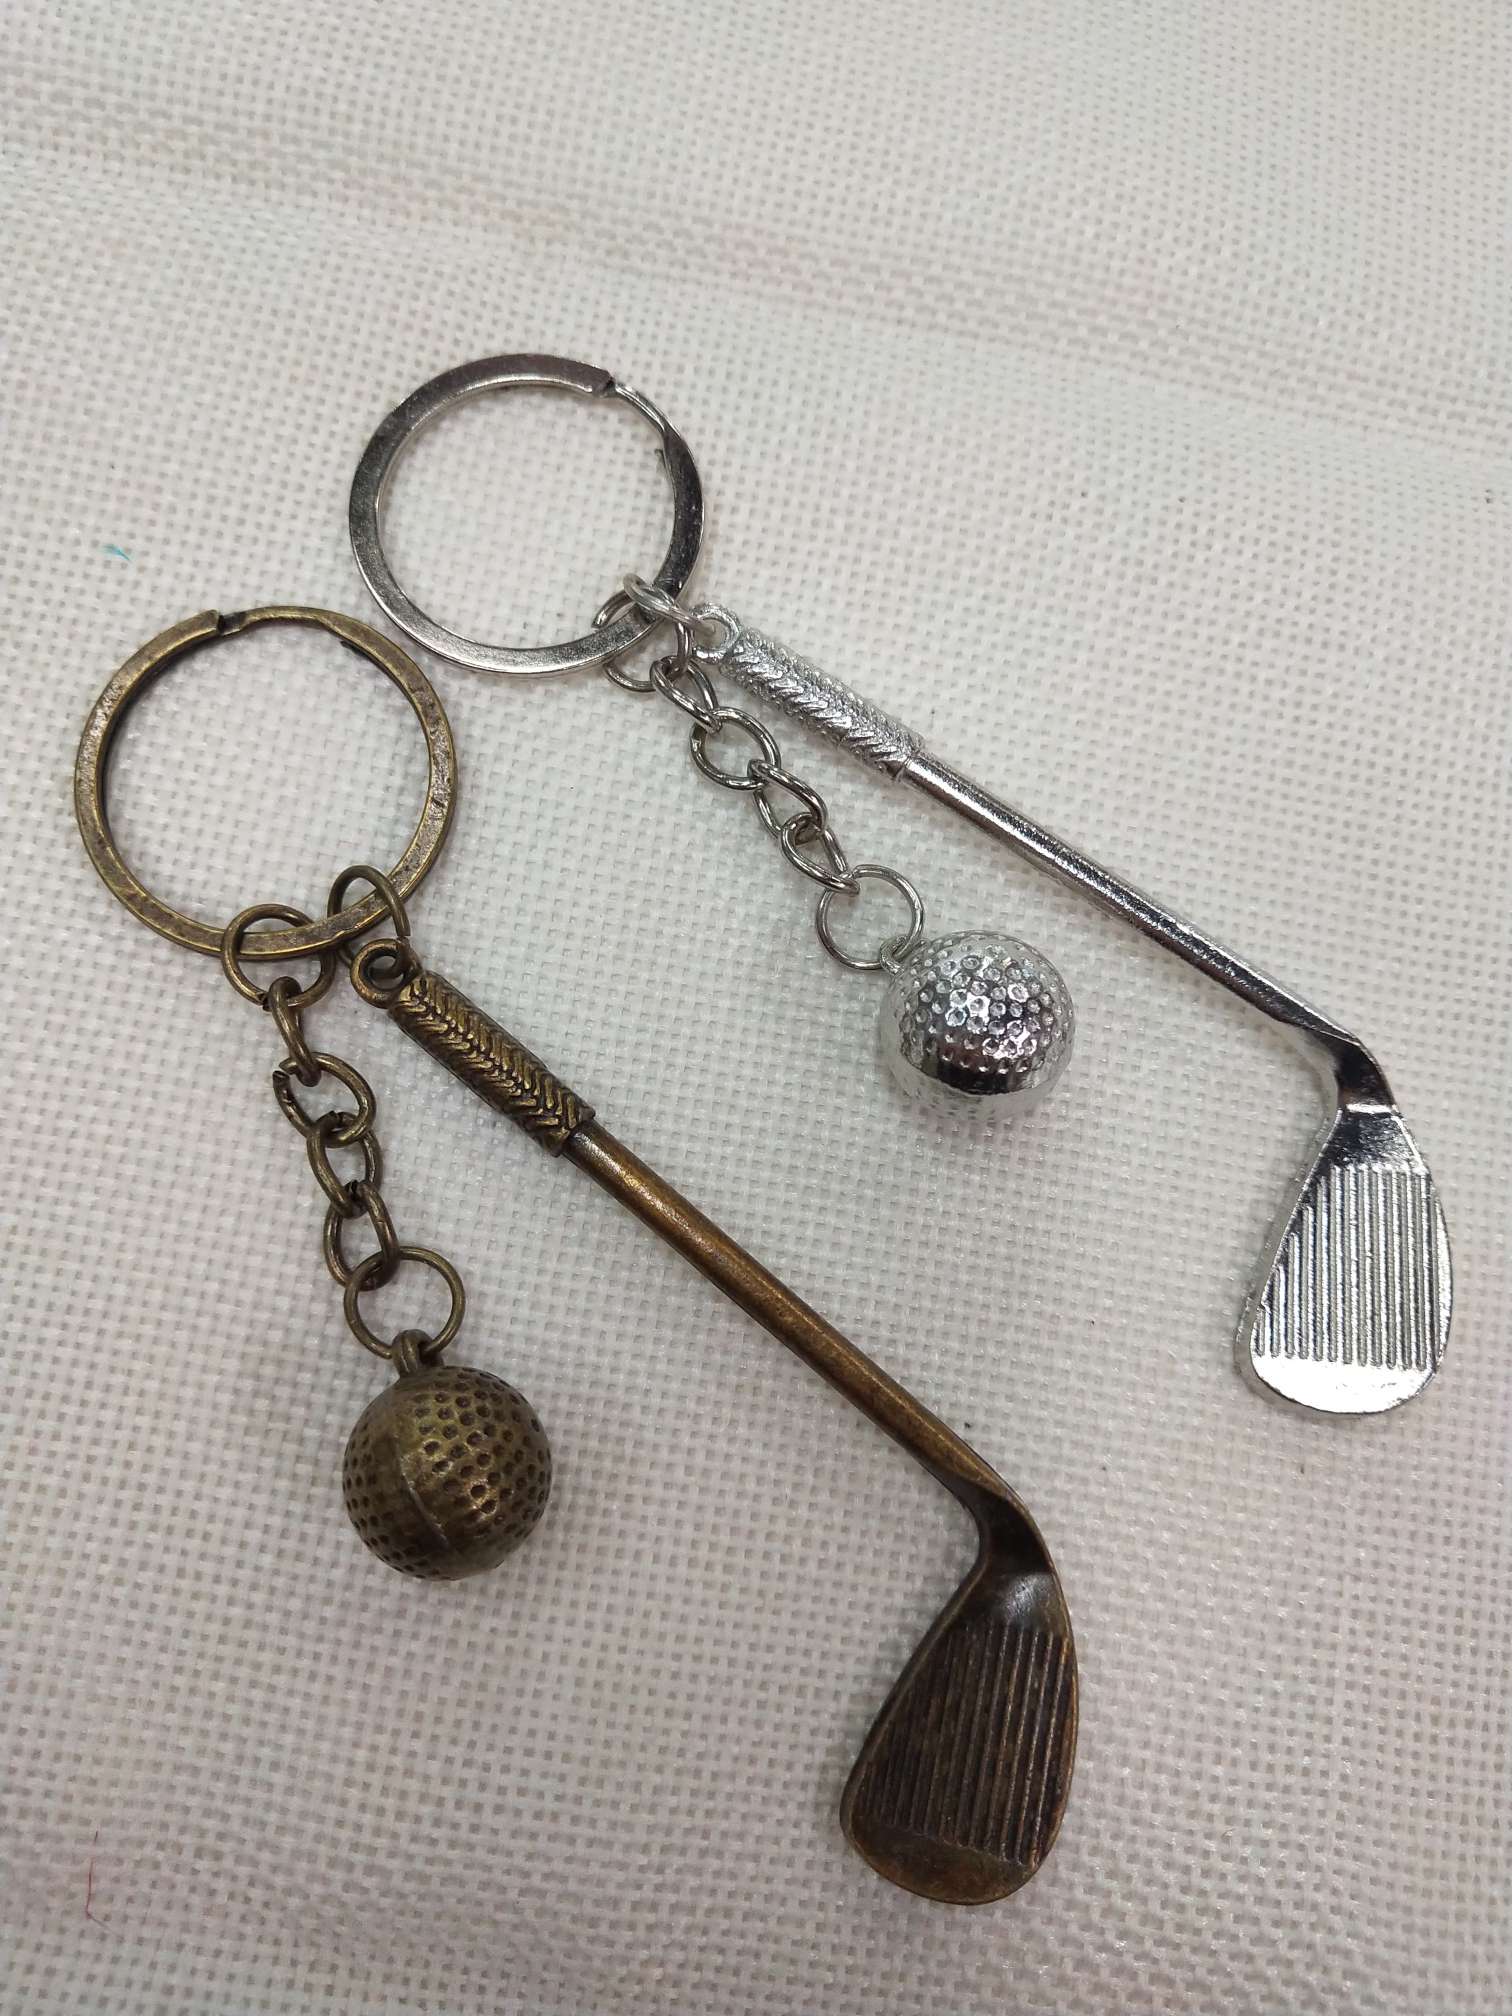 高尔夫球钥匙扣礼品金属高尔夫挂件高尔夫球钥匙链工艺品细节图